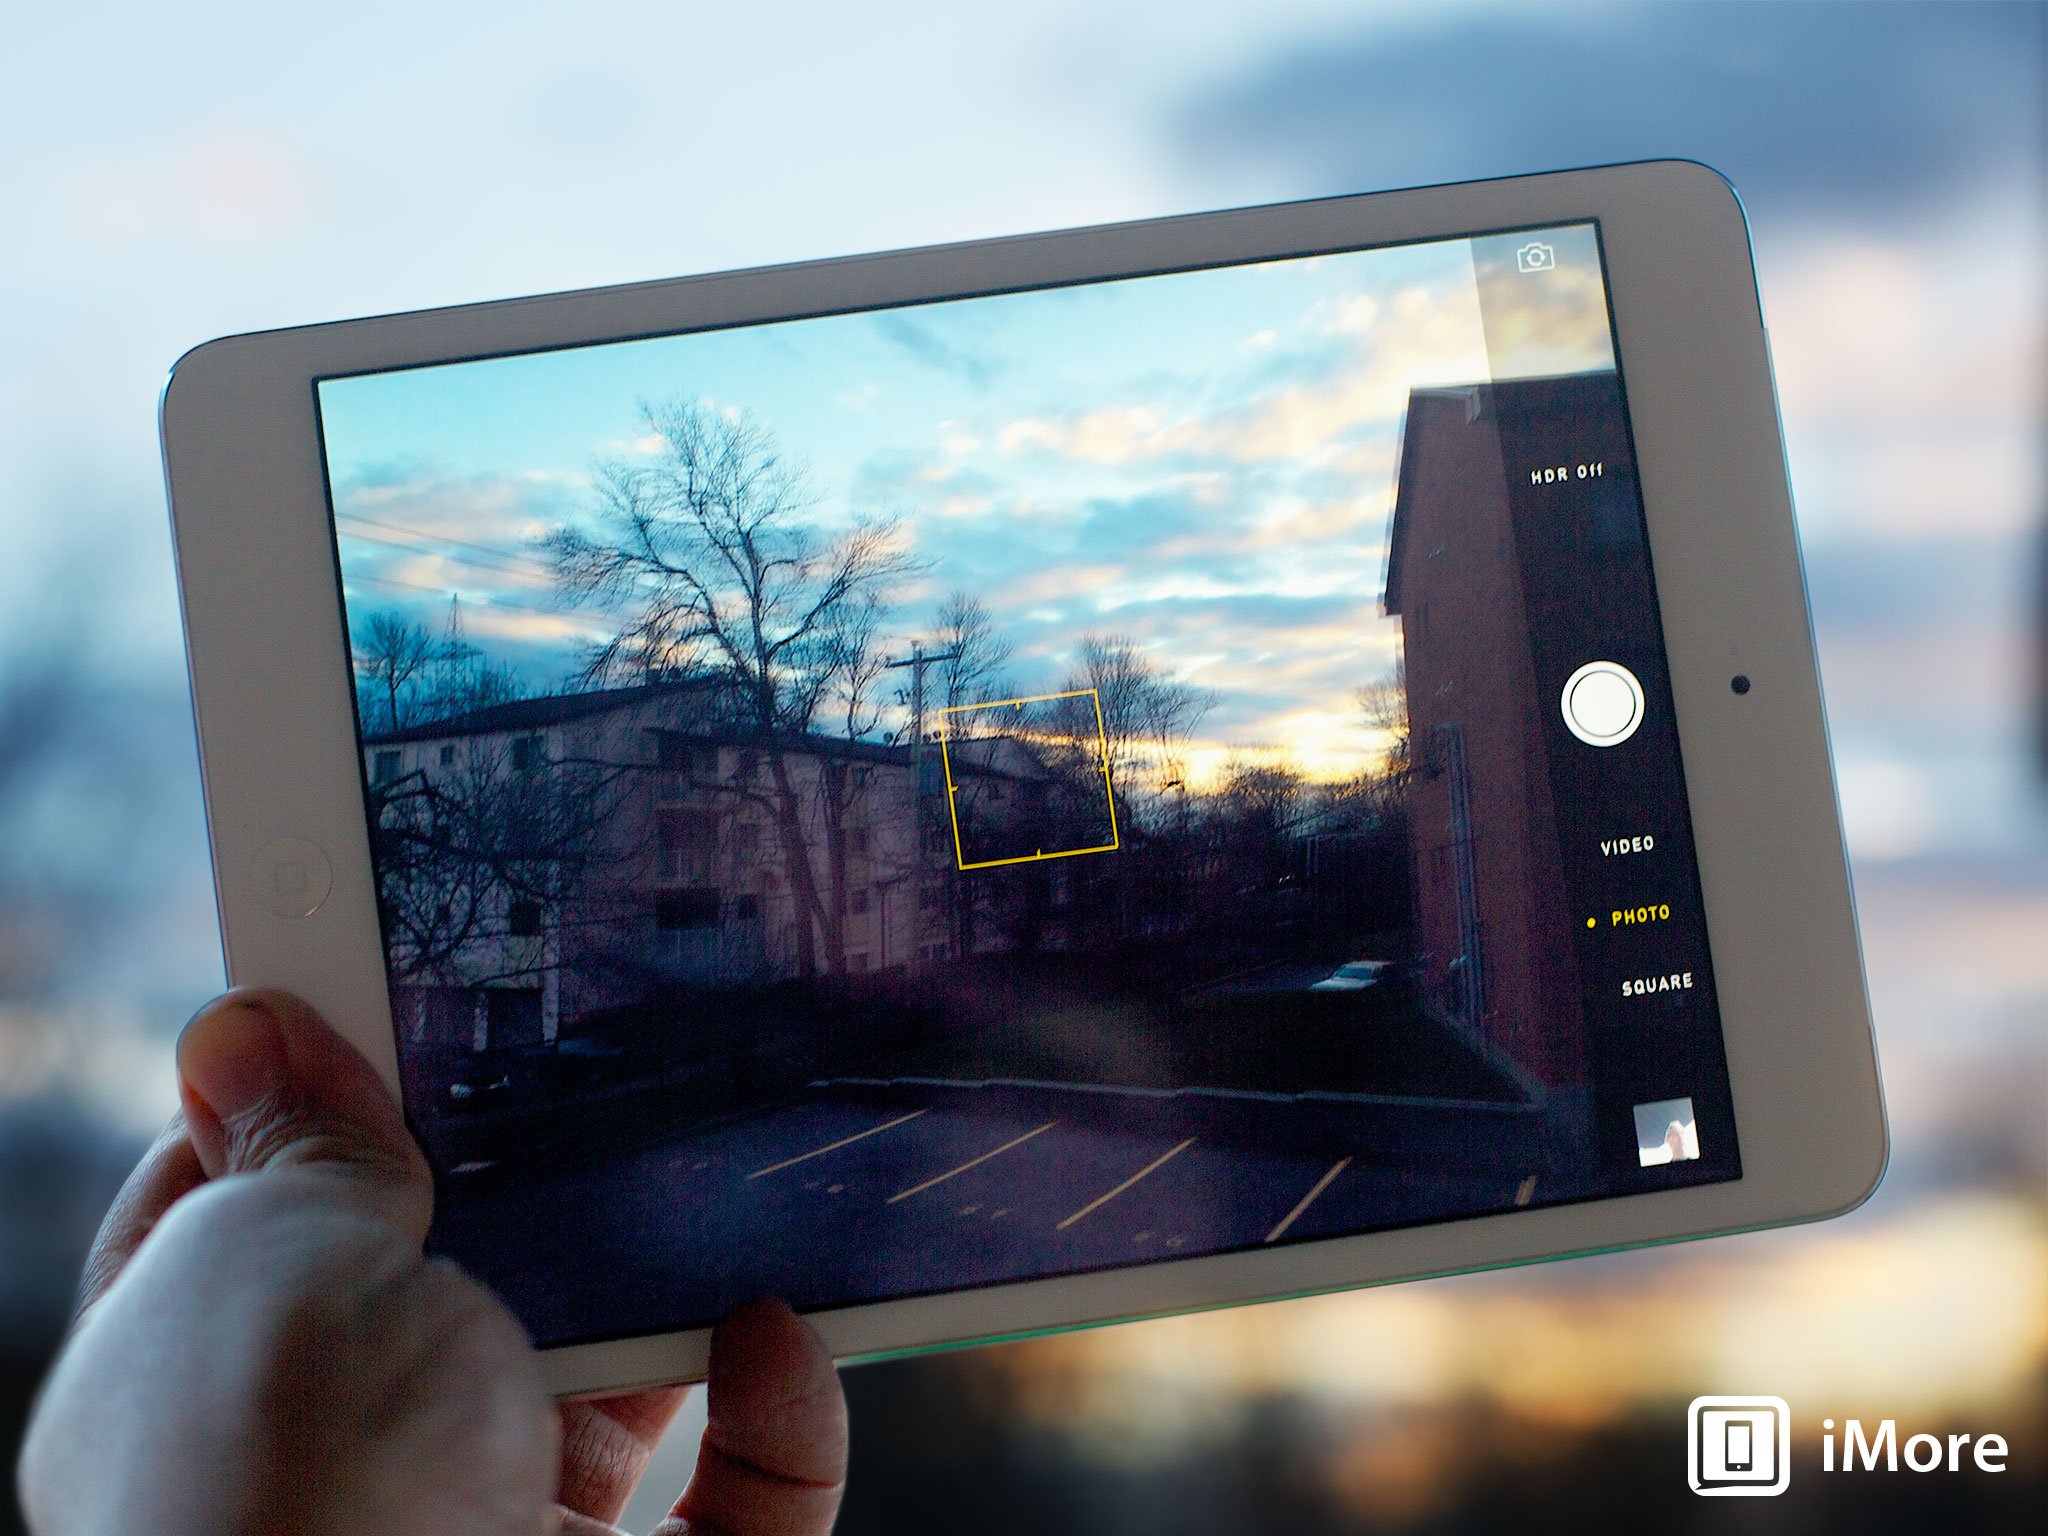 Retina iPad mini iSight and FaceTime HD camera tests